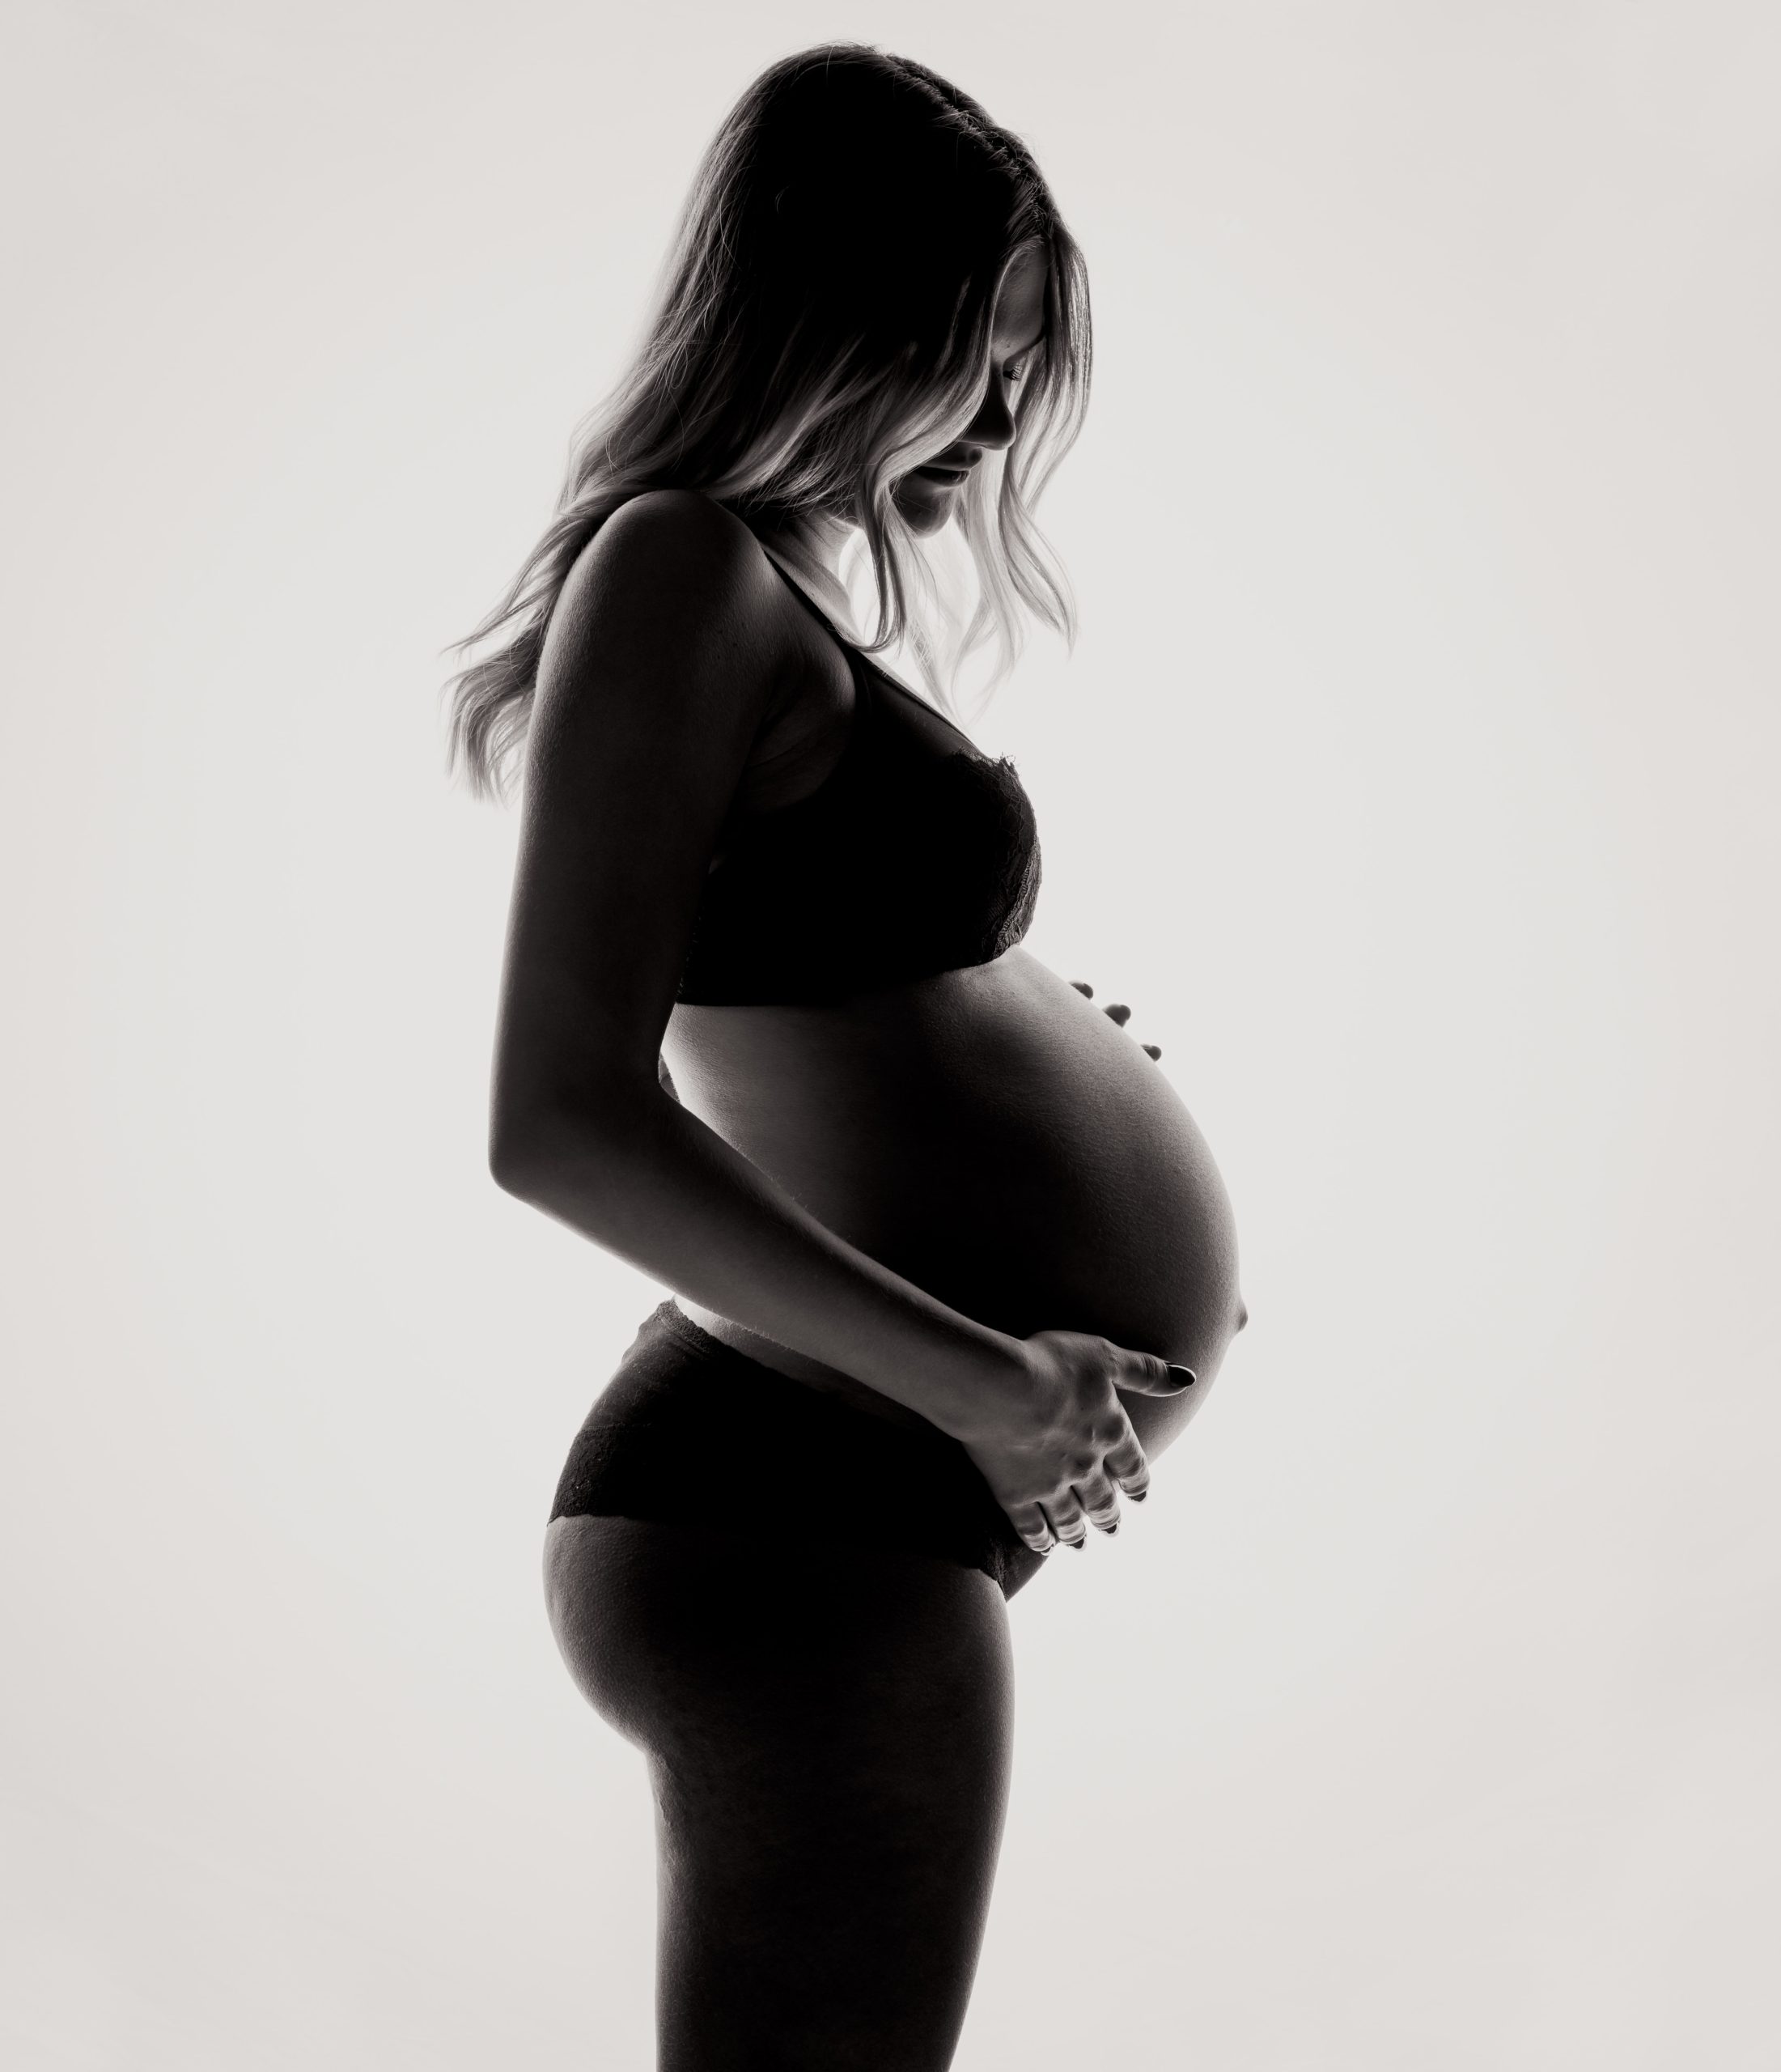 εγκυος scaled - Διατροφική Παρακολούθηση  και  πρόγραμμα για Ενίσχυση Γονιμότητας, Εγκυμοσύνη και Θηλασμό